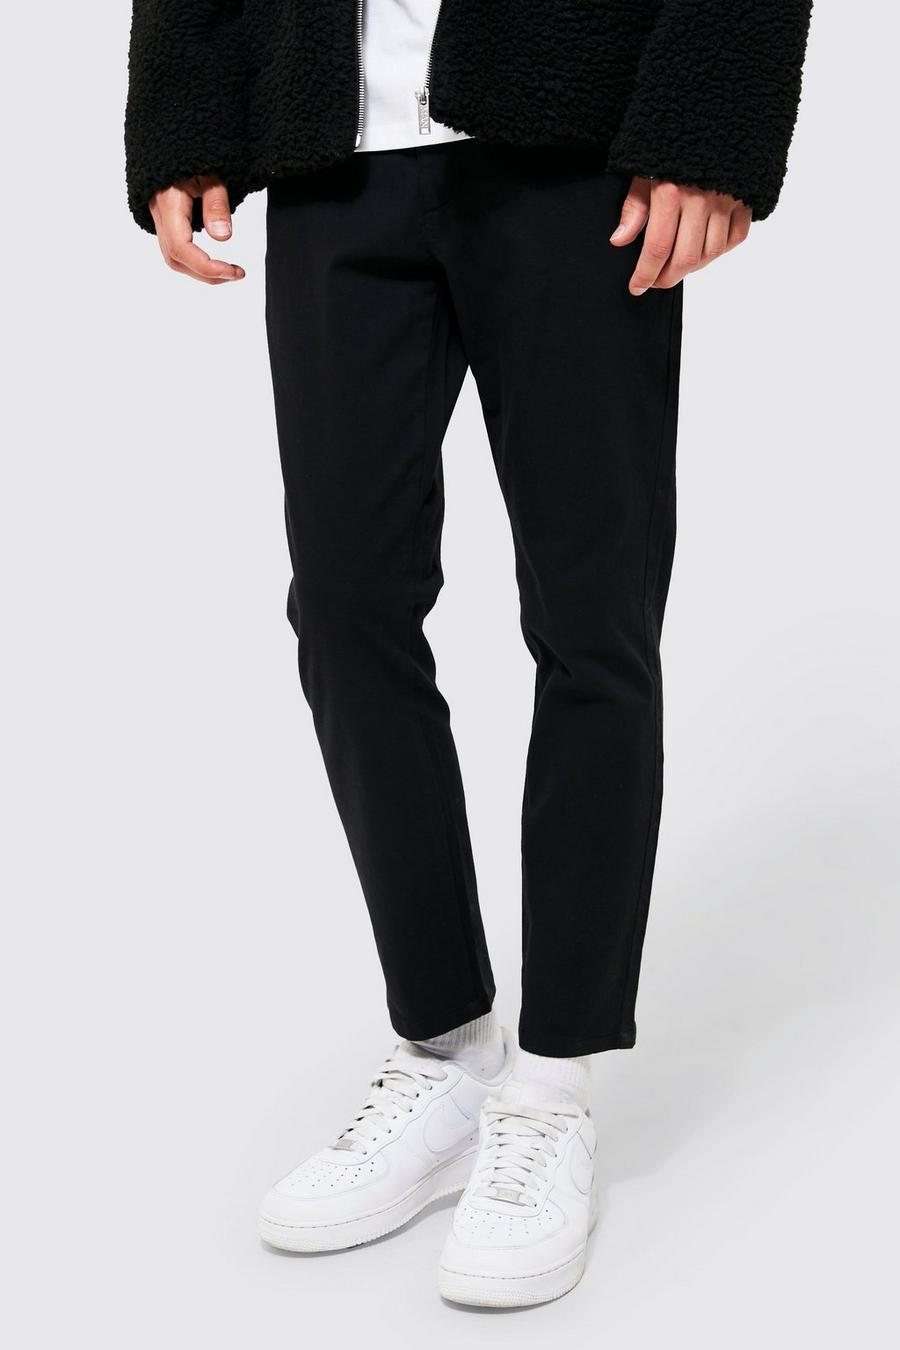 Pantaloni Chino alla caviglia Skinny Fit, Black nero image number 1